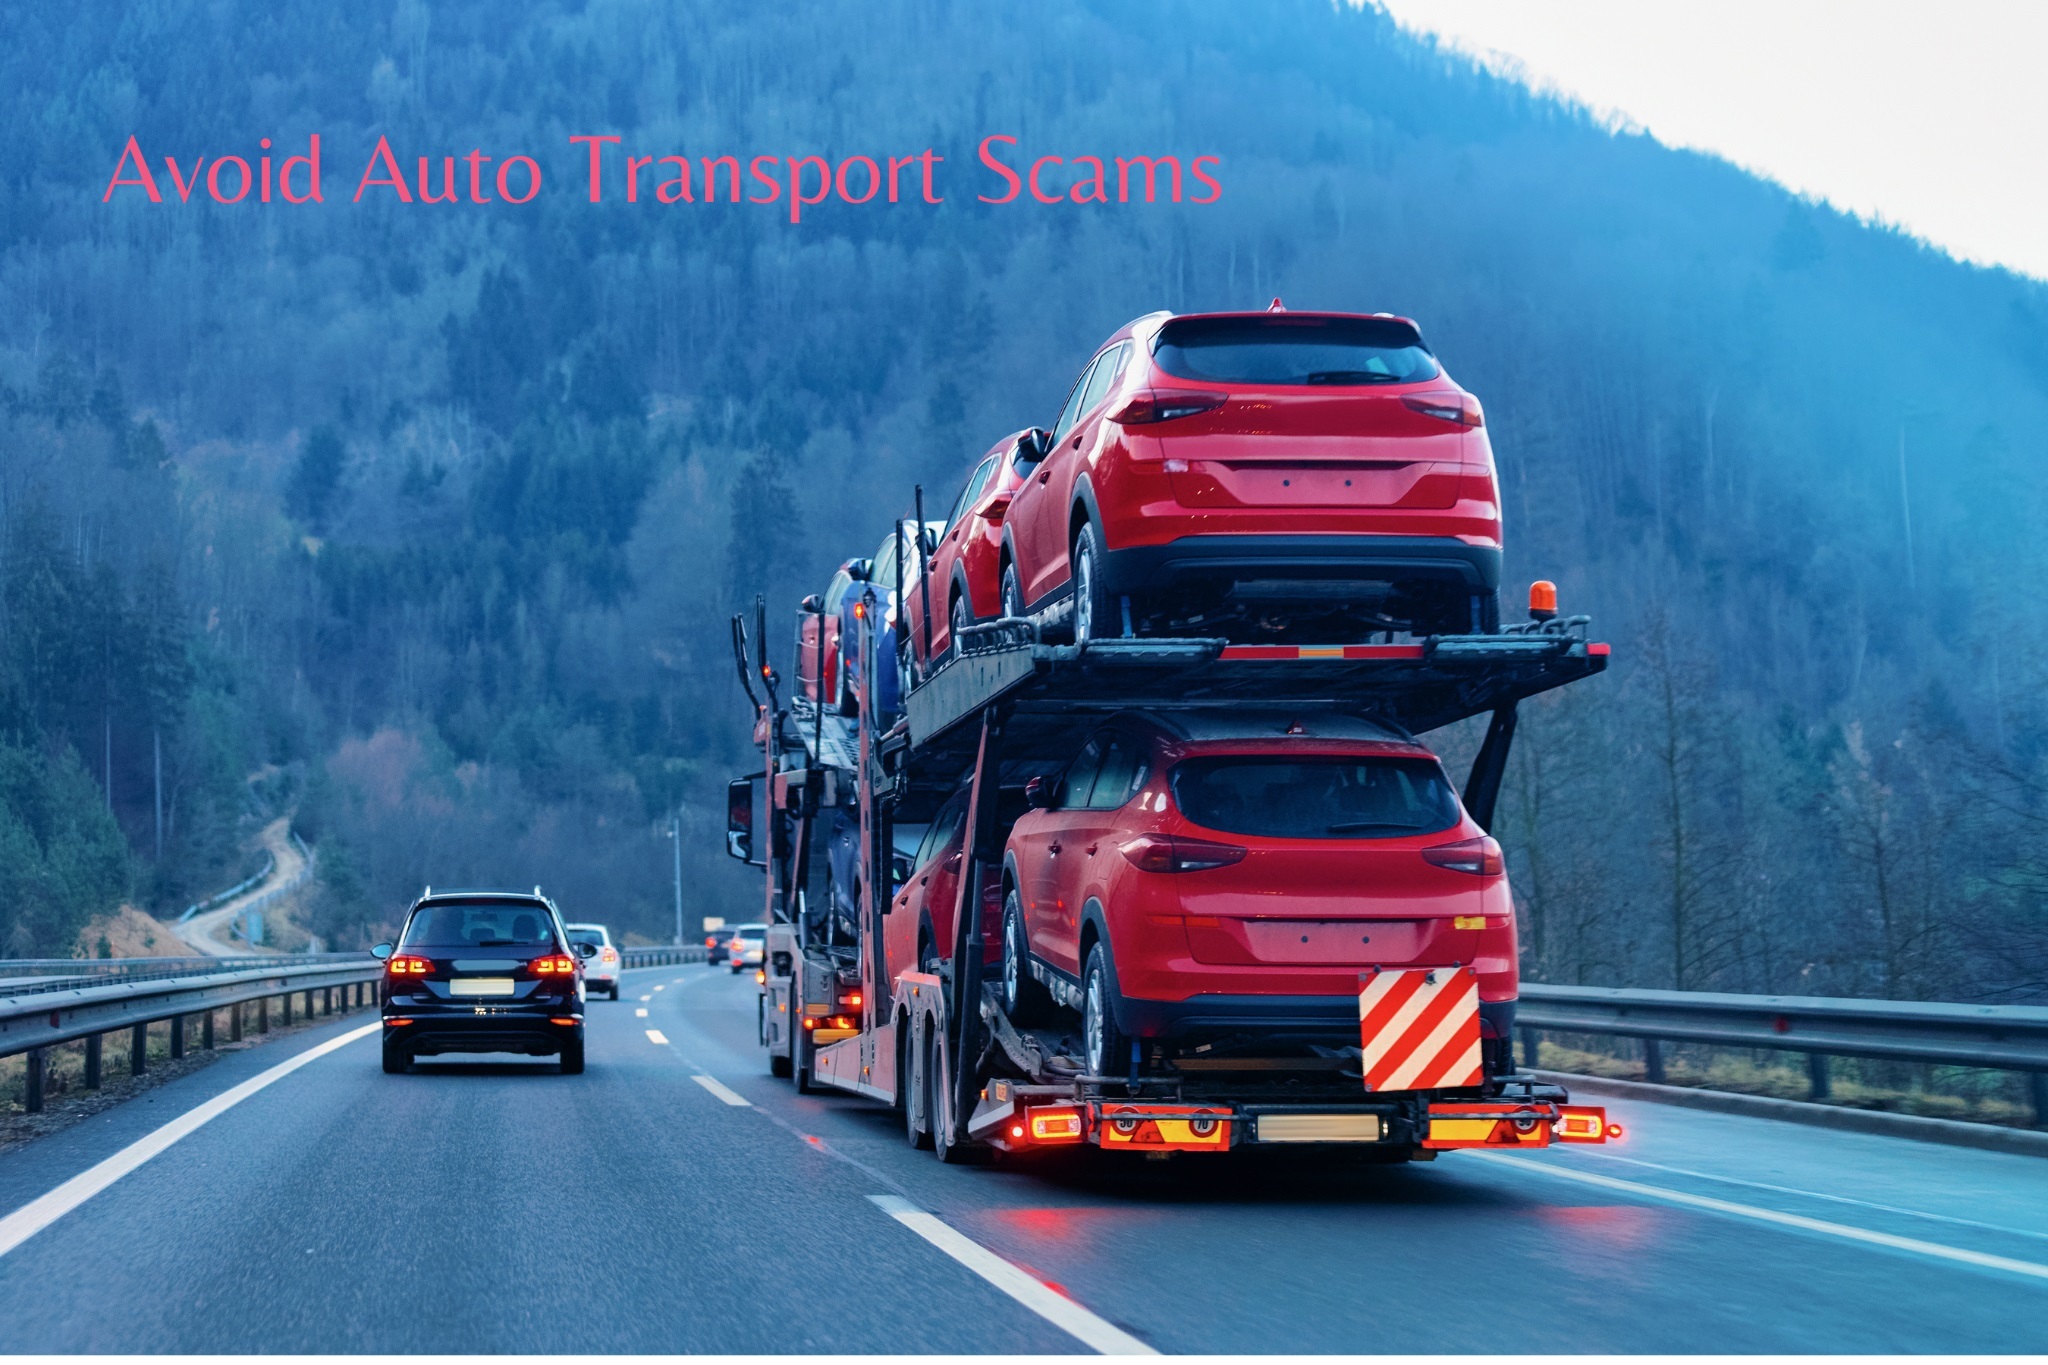 Auto Transport scam